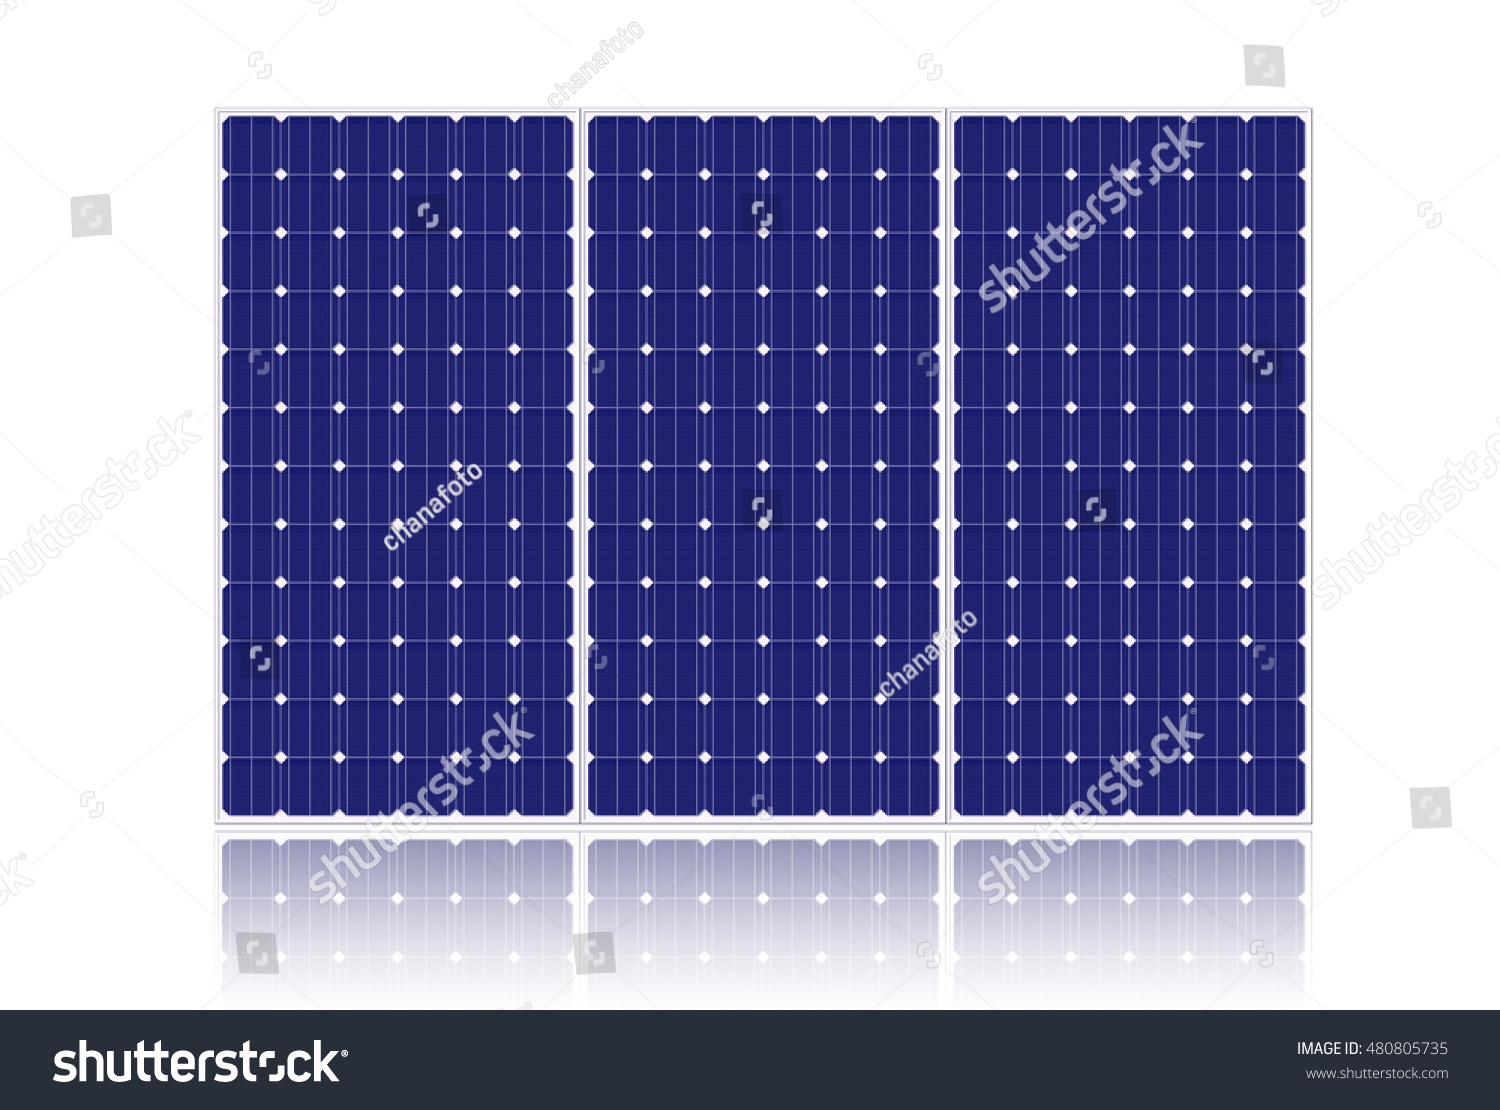 Edit Vectors Free Online - Solar cell | Shutterstock Editor